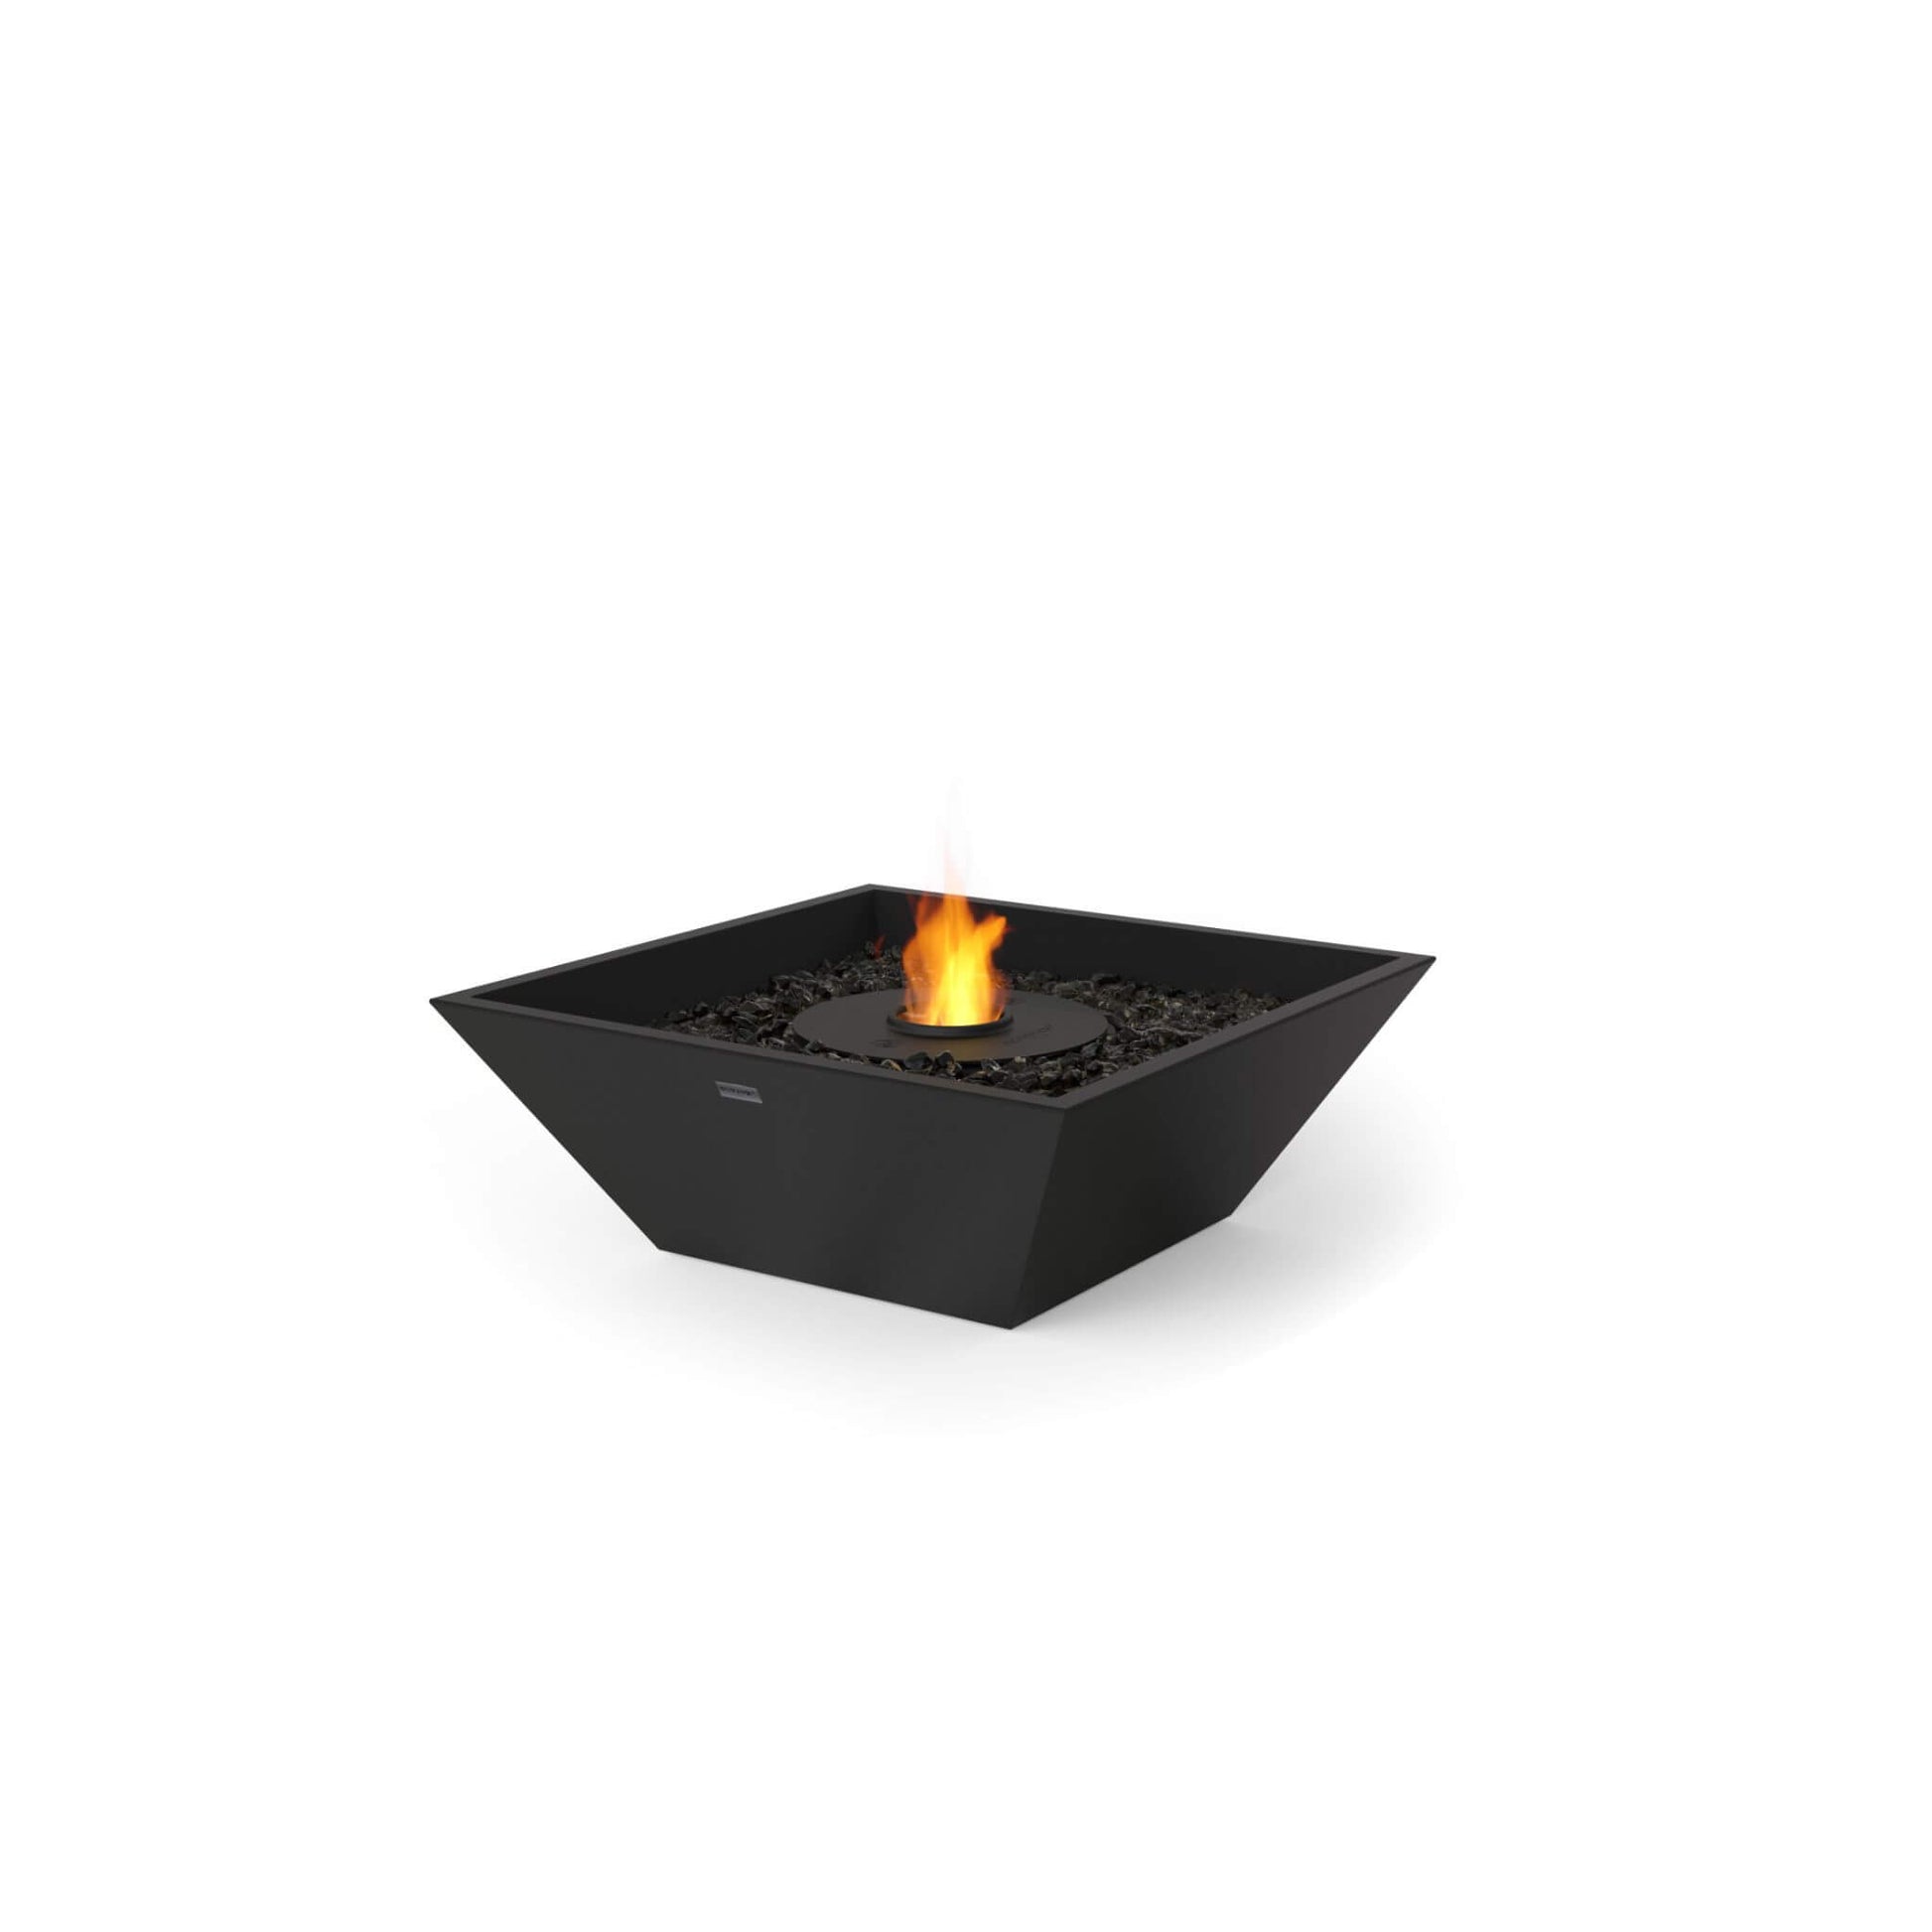 Ecosmart Fire Nova 600 bioethanol garden fire pit square bowl in concrete black with black steel ethanol burner